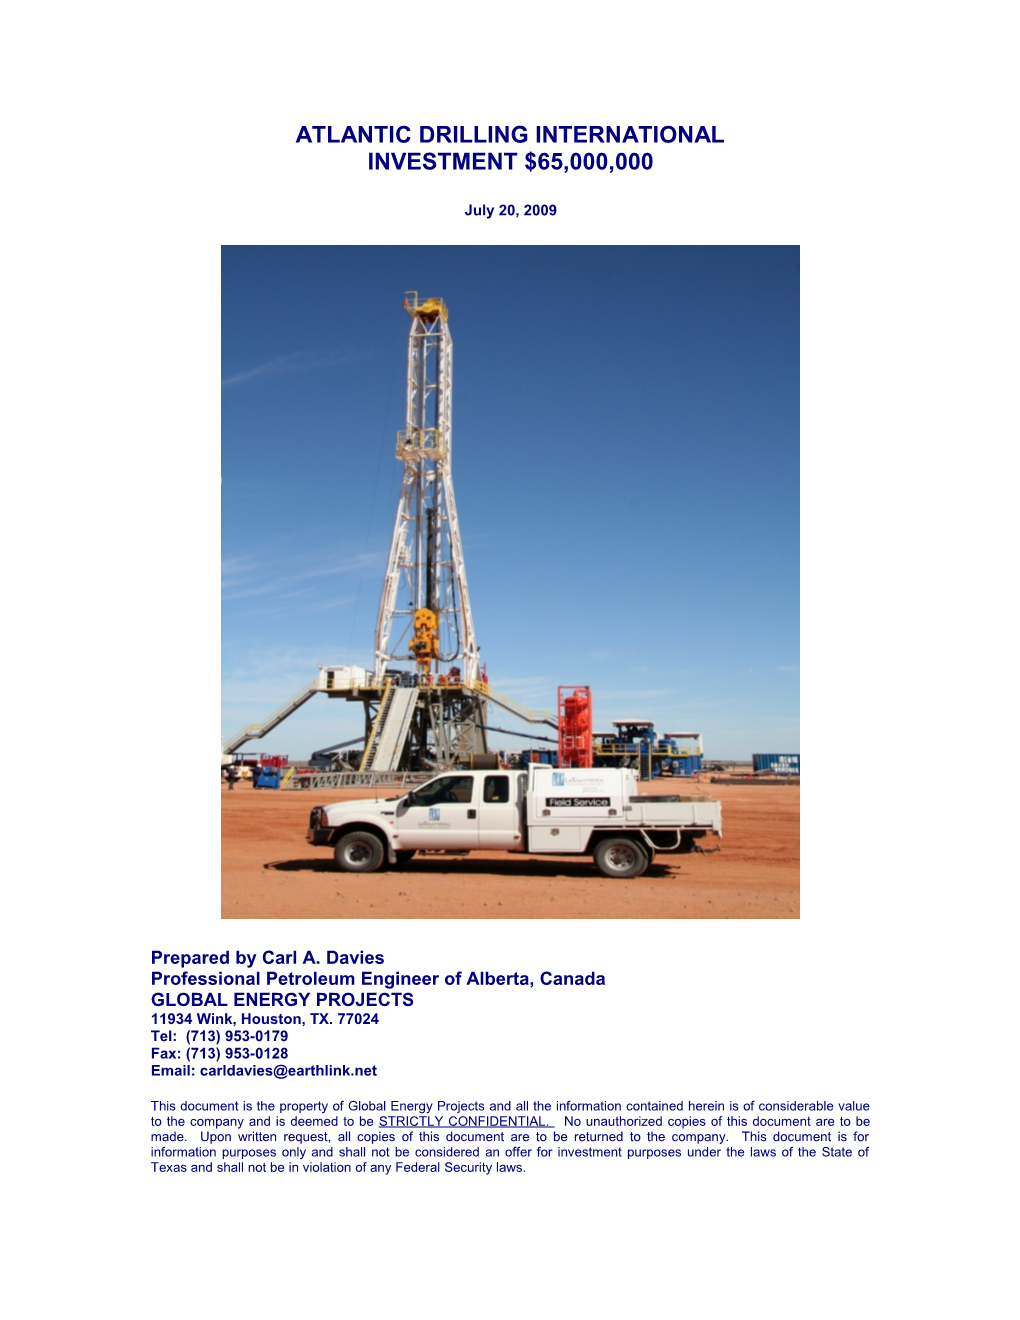 Sahara Drilling Company